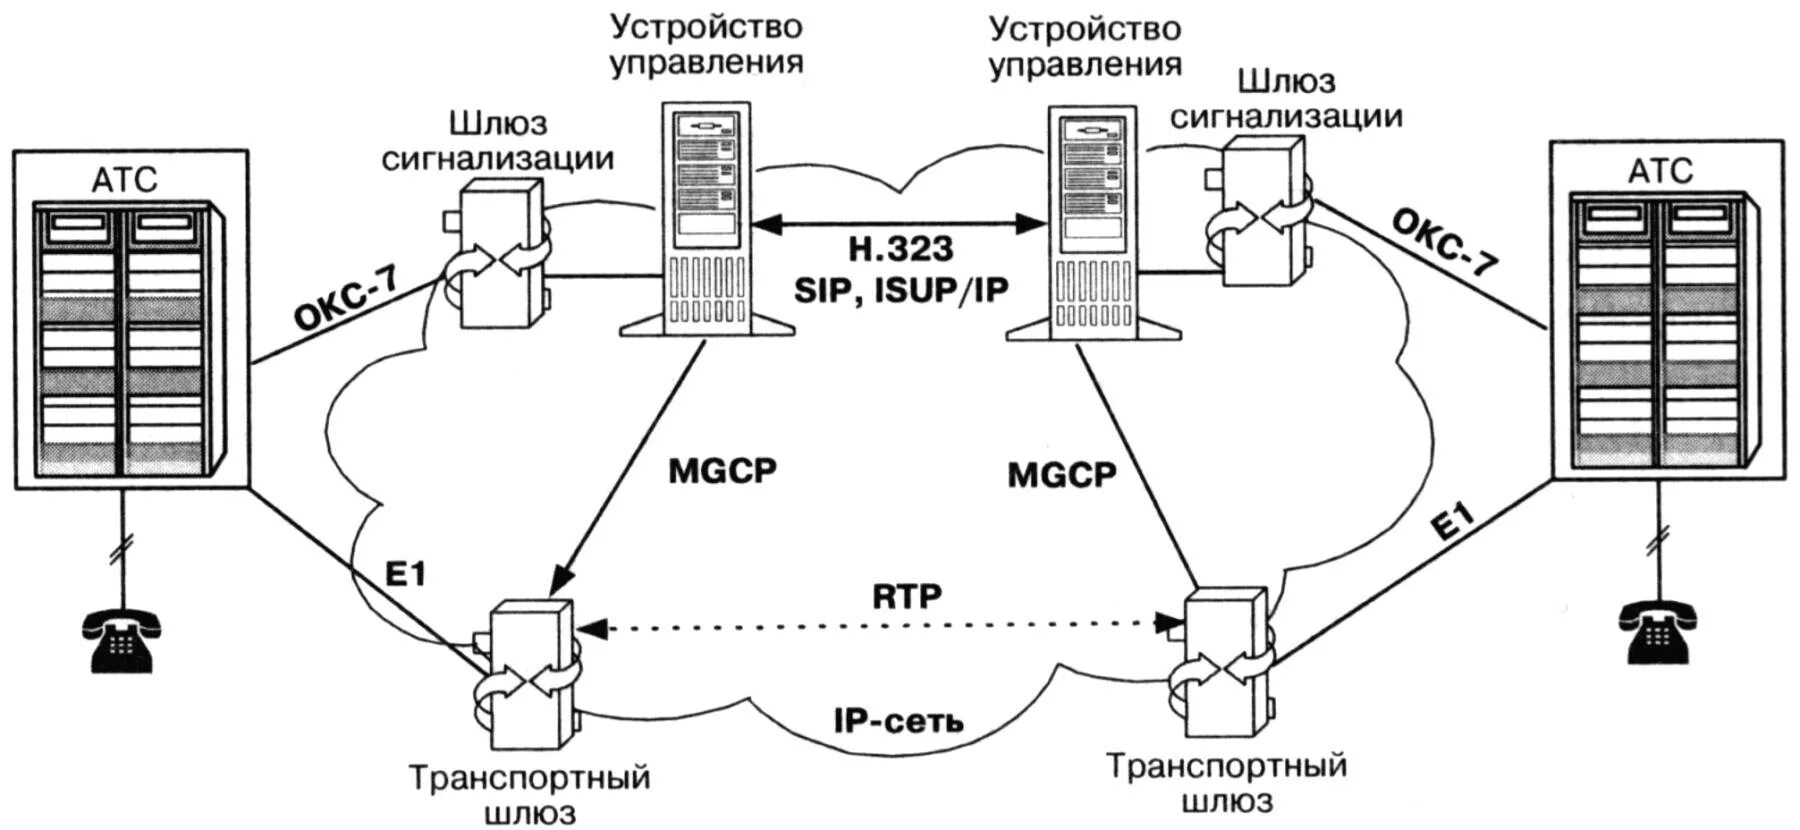 Протокол управления шлюзом Megaco/h.248. Протоколы управления MGCP, H.248. Шлюз IP телефонии схема. Логическая схема организации связи VOIP по протоколу SIP. Движения атс